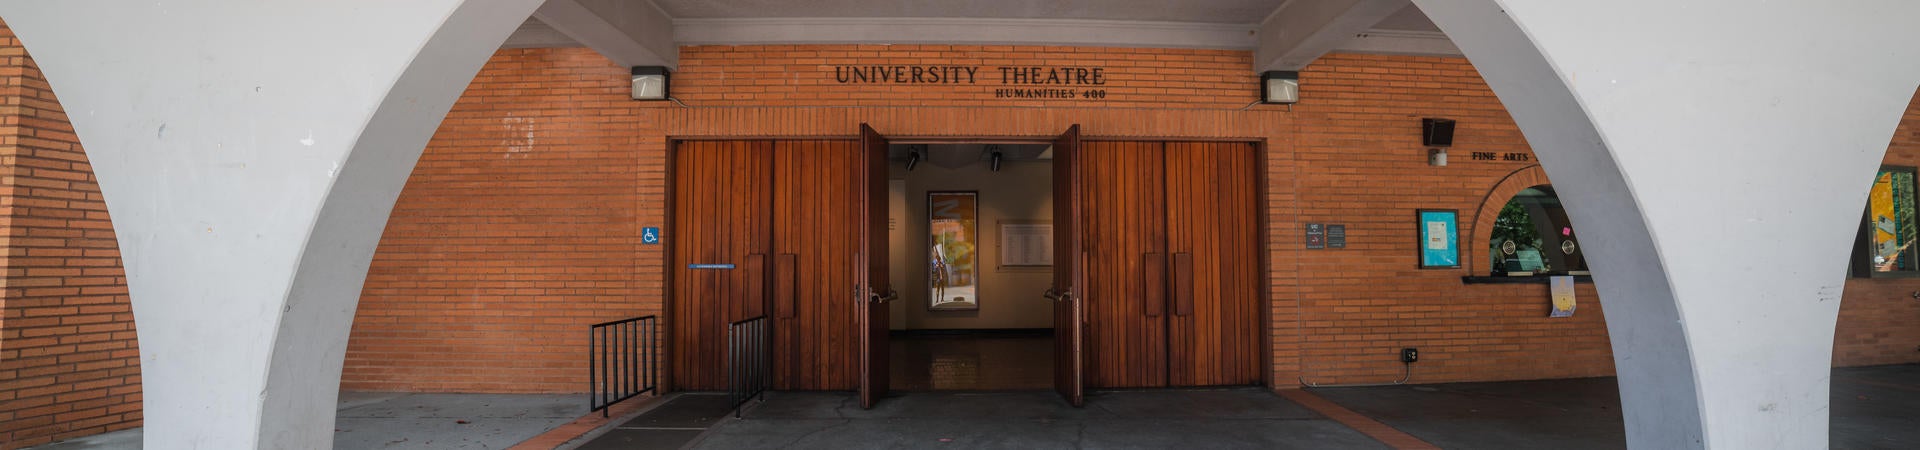 University Theatre Front Entrance